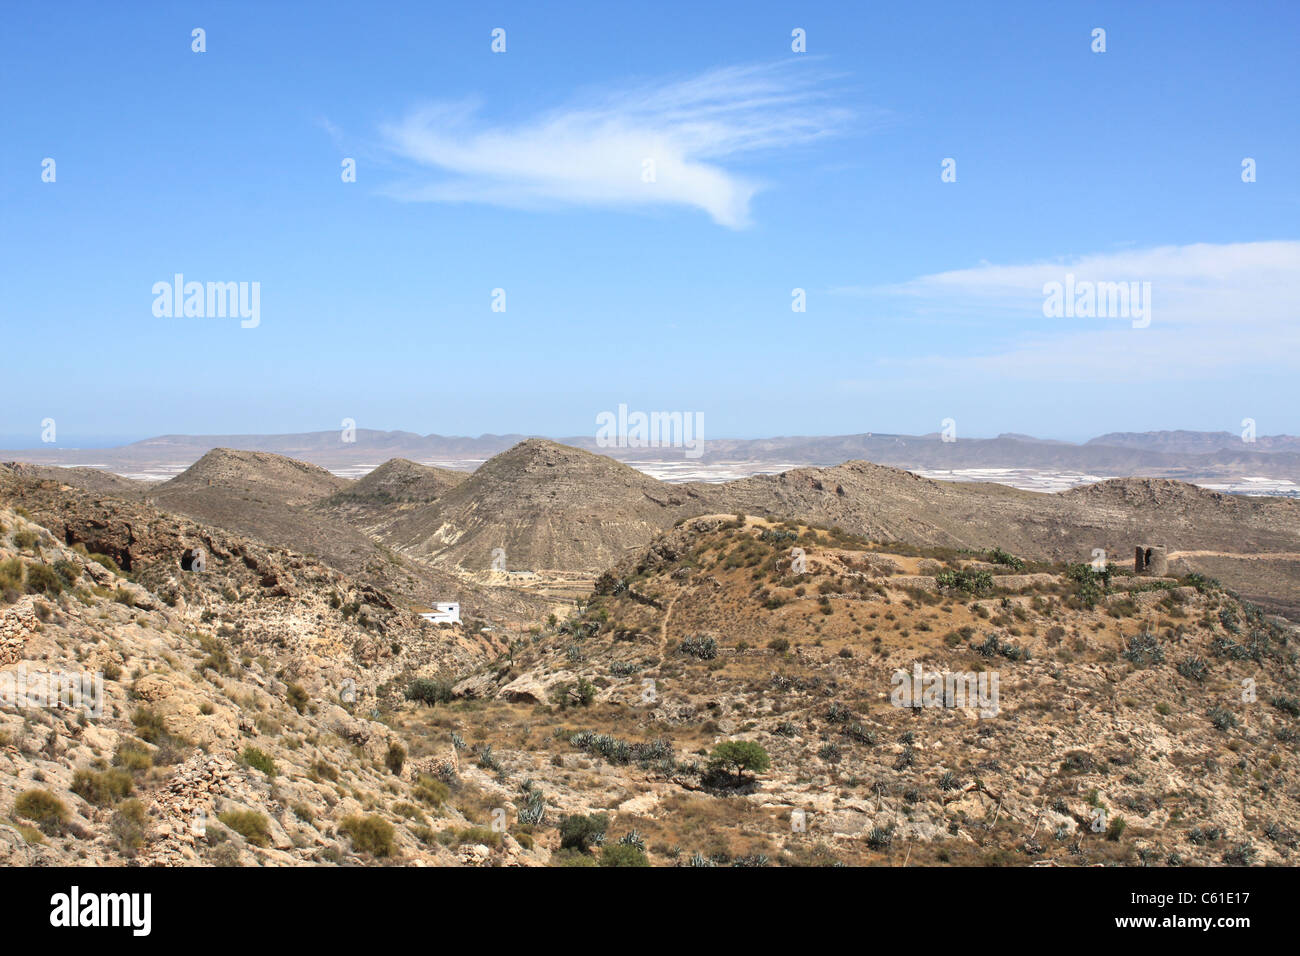 Arid landscape in Nijar, Almeria (Spain) Stock Photo